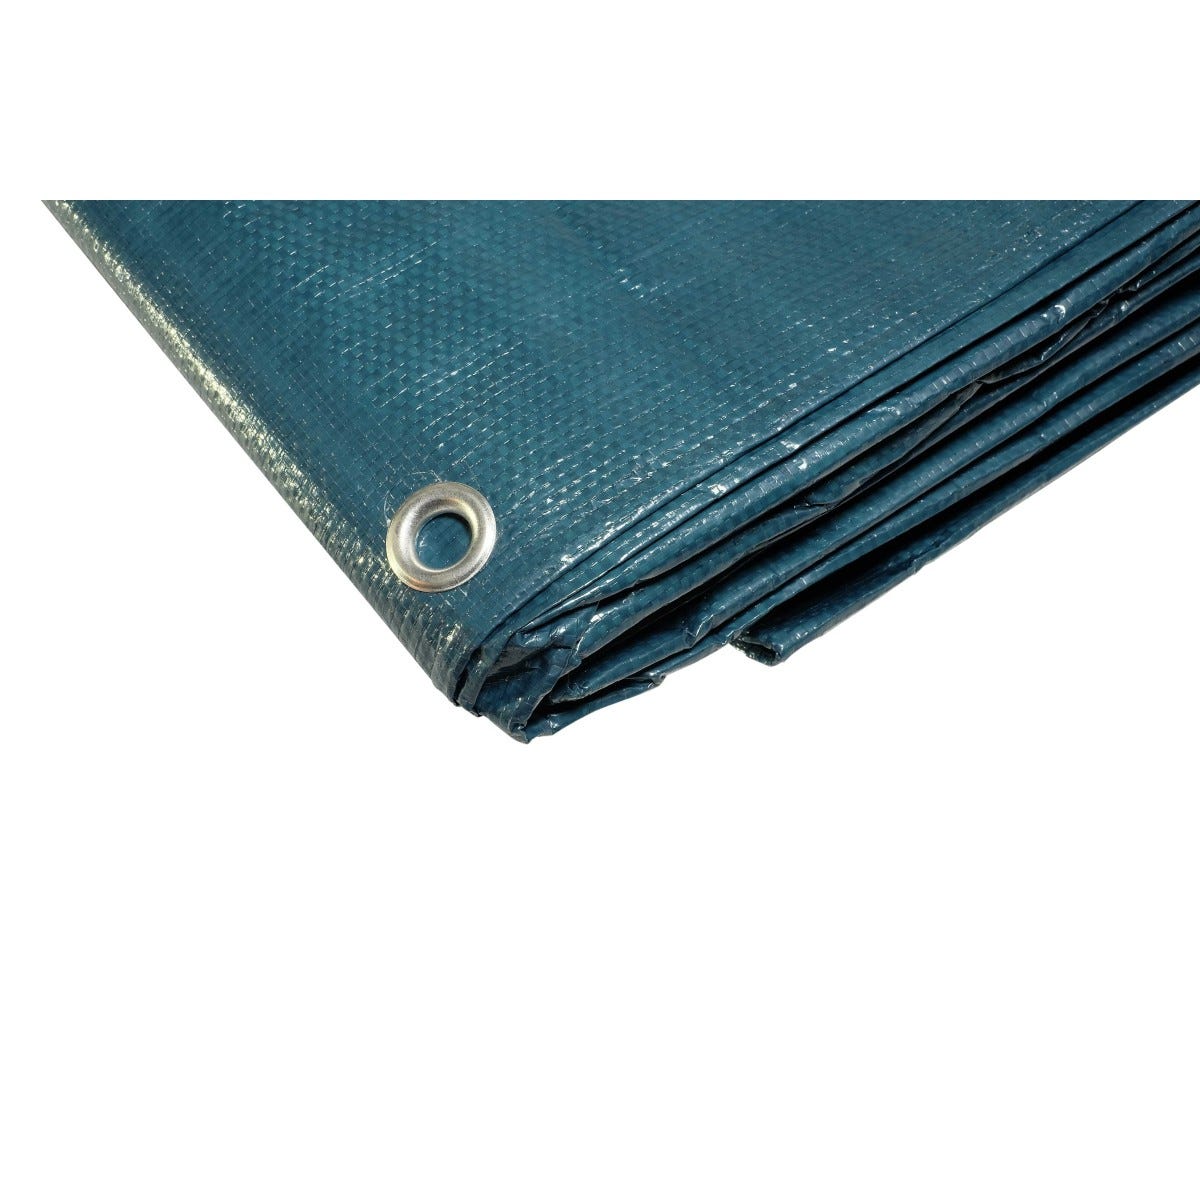 Bâche plastique 6x10 m bleue et verte 150g/m² - bâche de protection polyéthylène 2